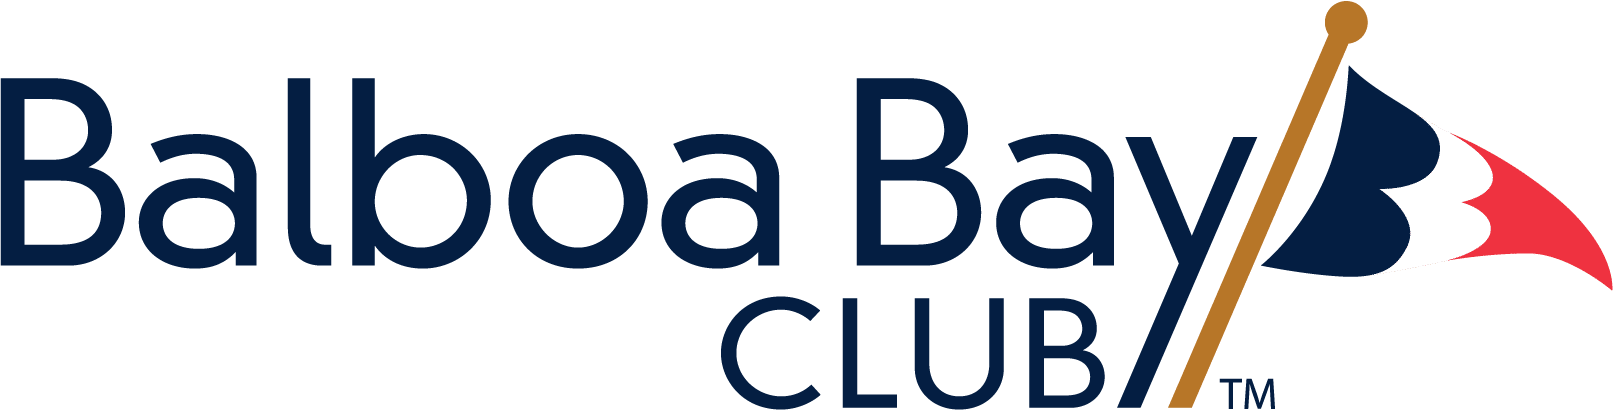 Balboa bay kulübü logosu